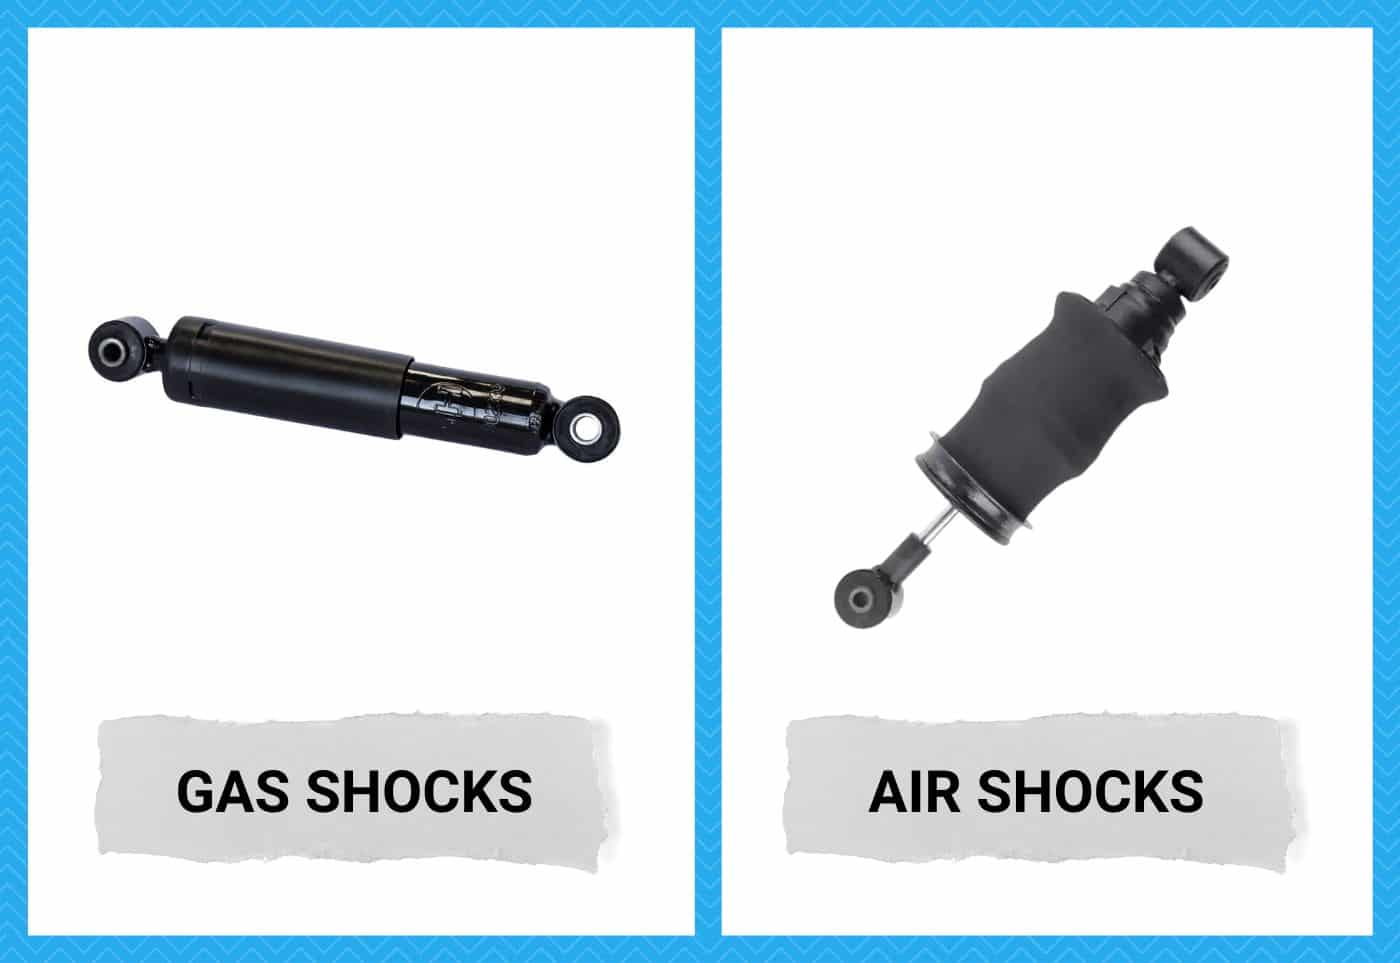 Air Shocks vs Gas Shocks